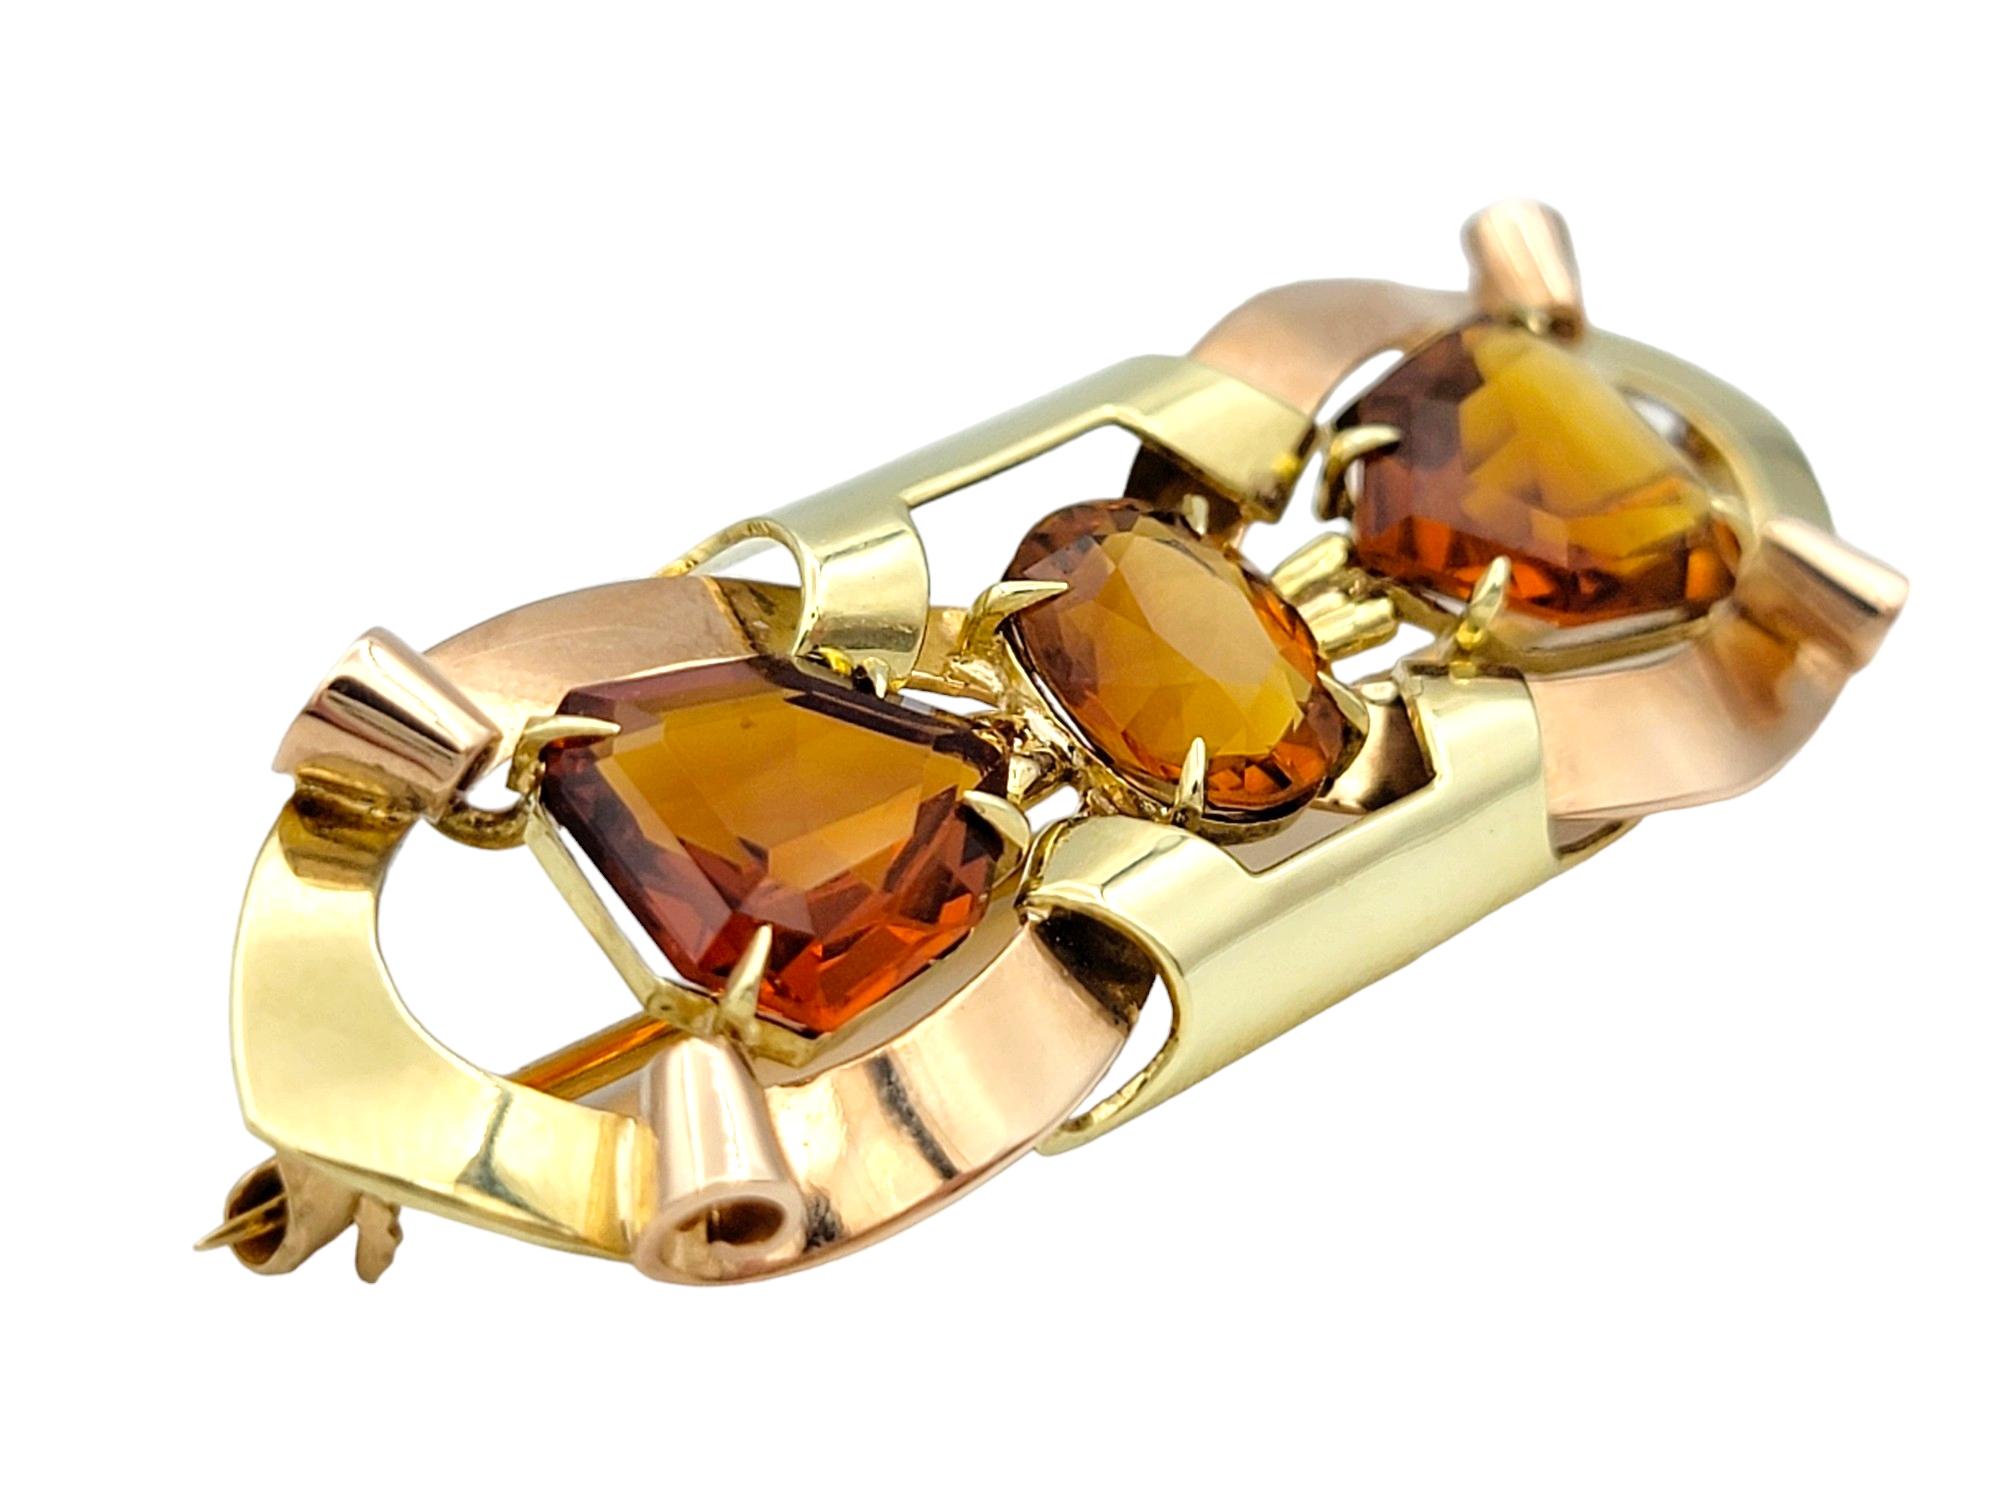 Cette magnifique broche Tiffany & Co. au design vintage en forme de ruban respire l'élégance classique et le charme intemporel. Réalisée en or jaune et rose 14 carats, cette pièce exquise présente un motif de ruban magnifiquement détaillé, orné de